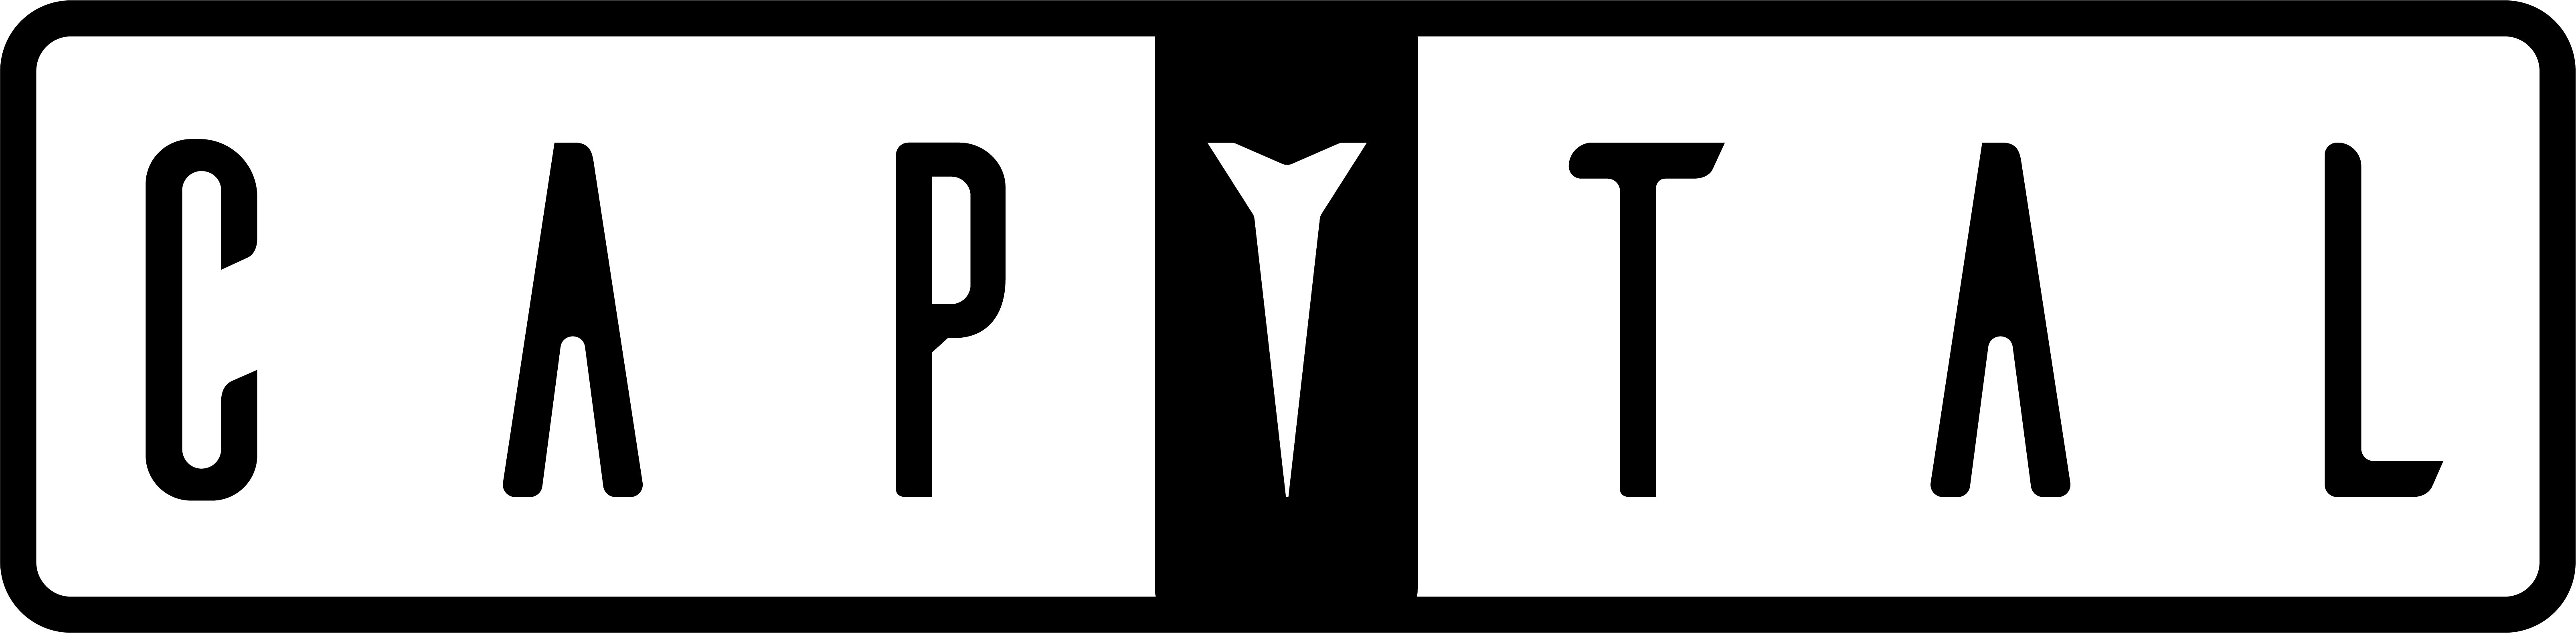 Capytals logo